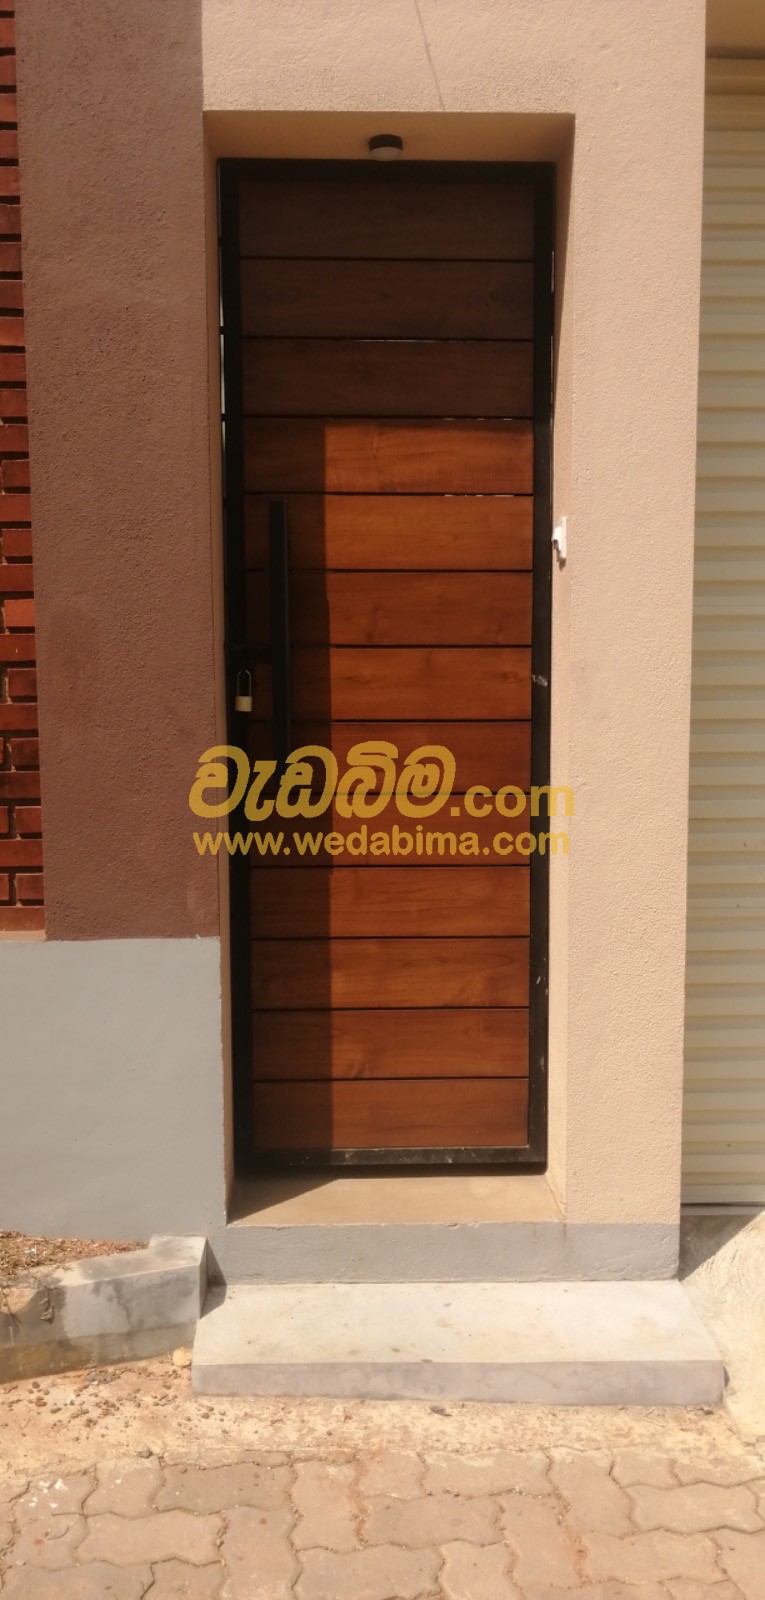 Cover image for Doors Windows Price in Sri Lanka